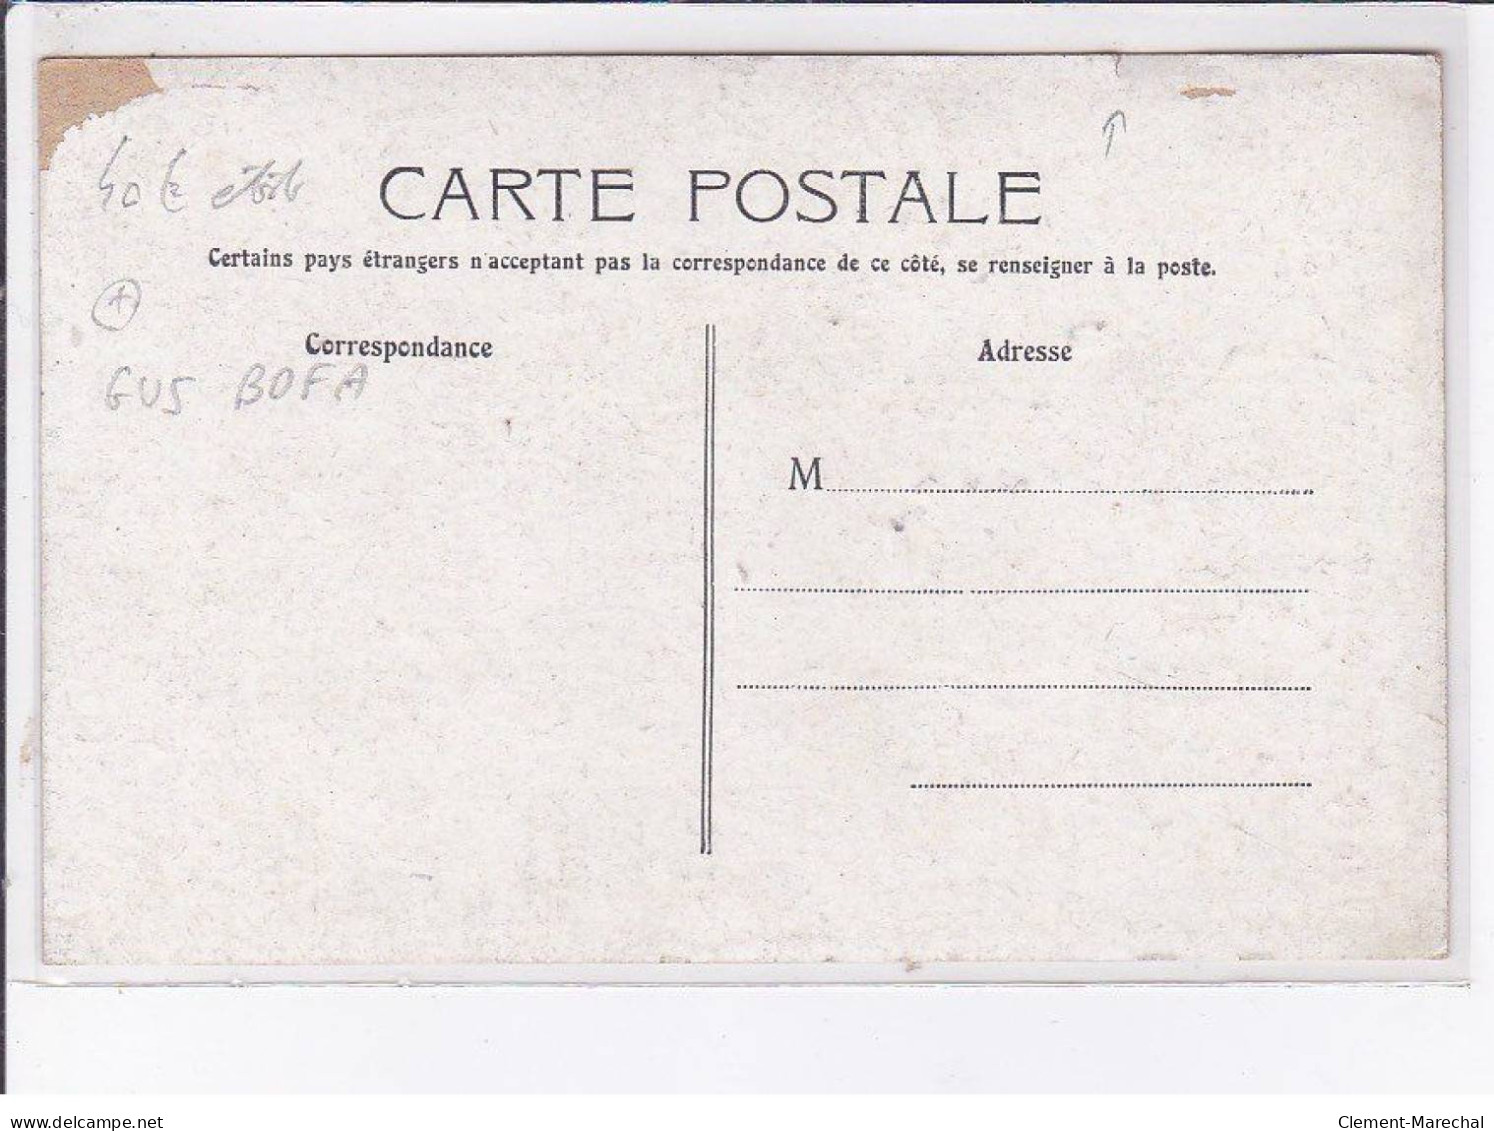 PUBLICITE: Monsieur Zéro Au Palais Royal, Barral, Personne En Costume Mmilitaire, Médailles, Gus Bofa - état - Publicidad